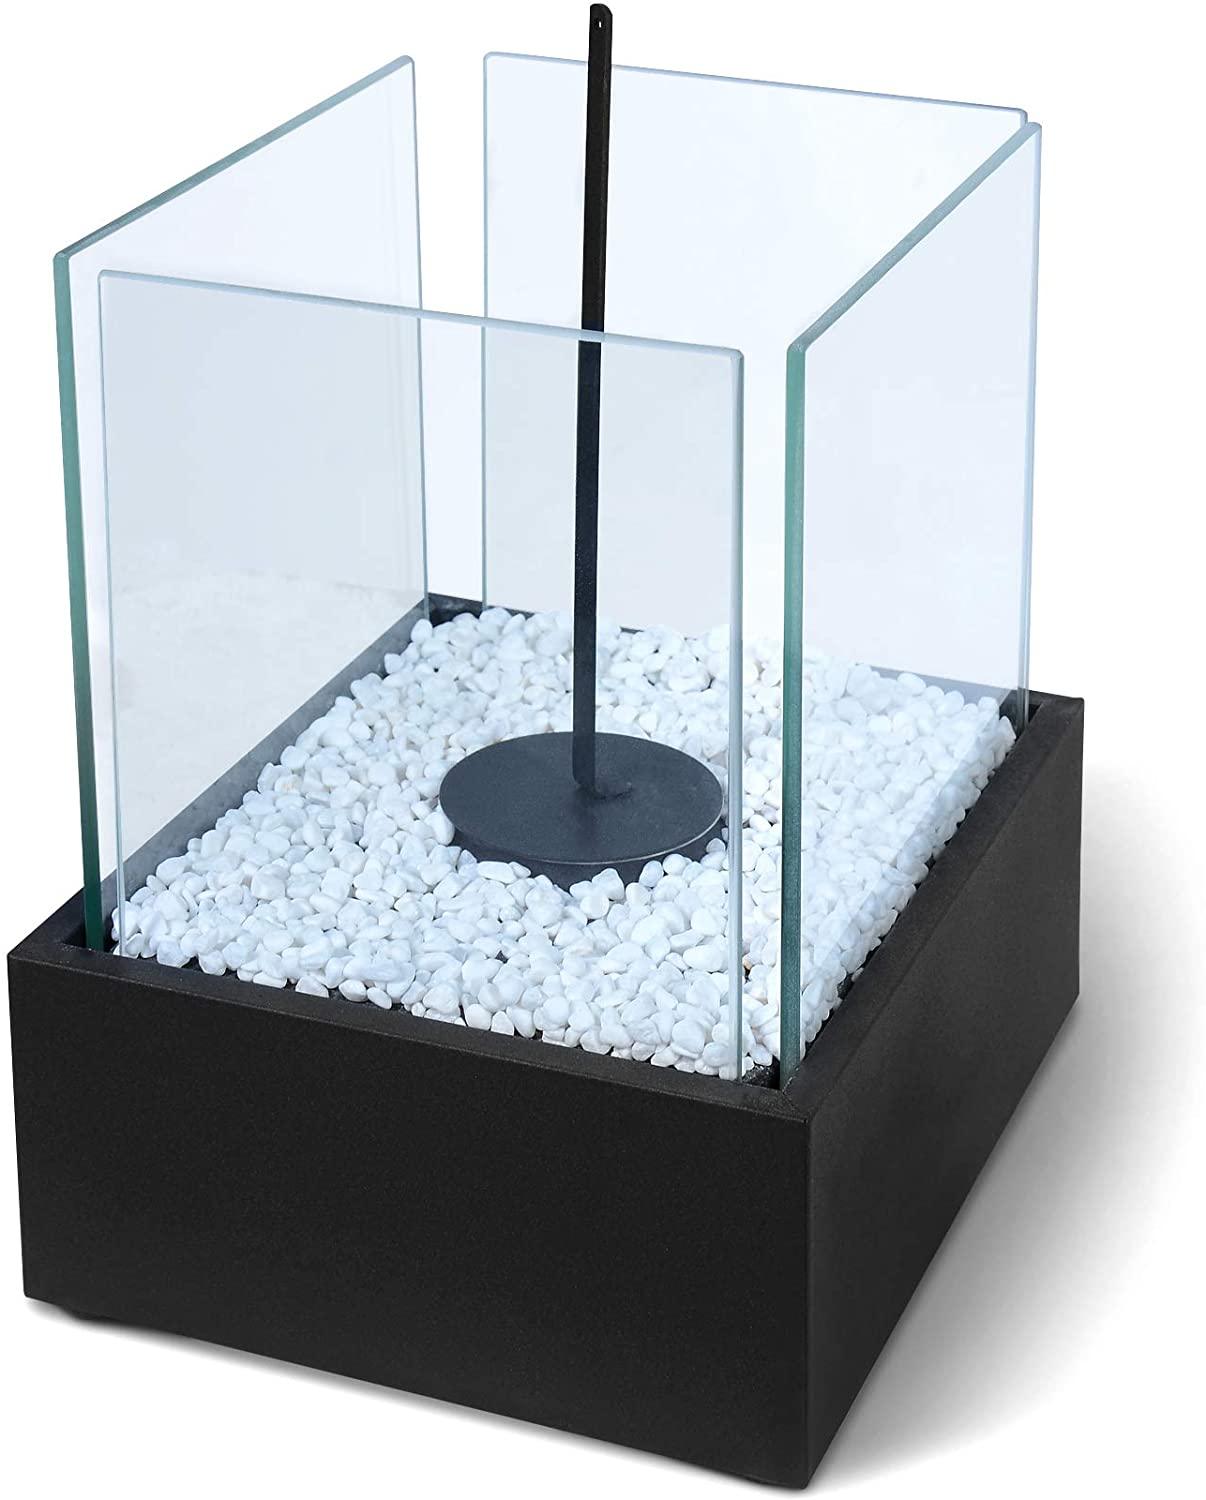 Qlima cheminée bio ethanol modèle de table verre noir